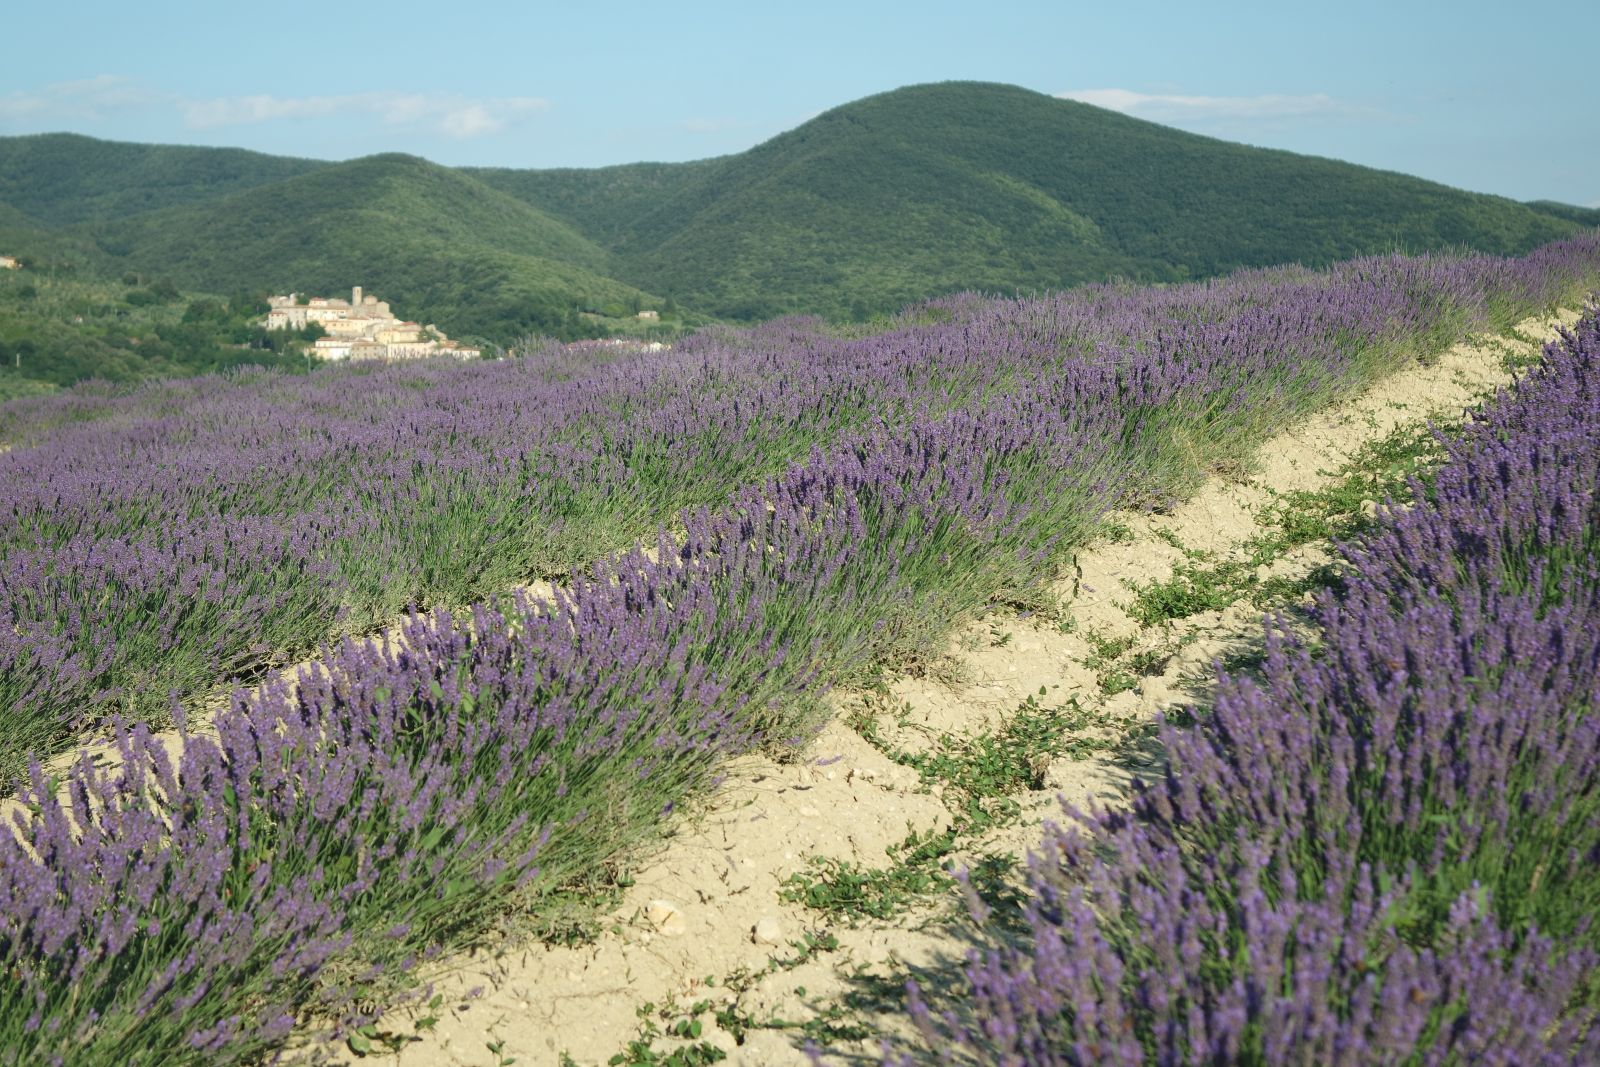 Lavendelfelder bei Pieve Santa Luce, südlich von Pisa, Toskana